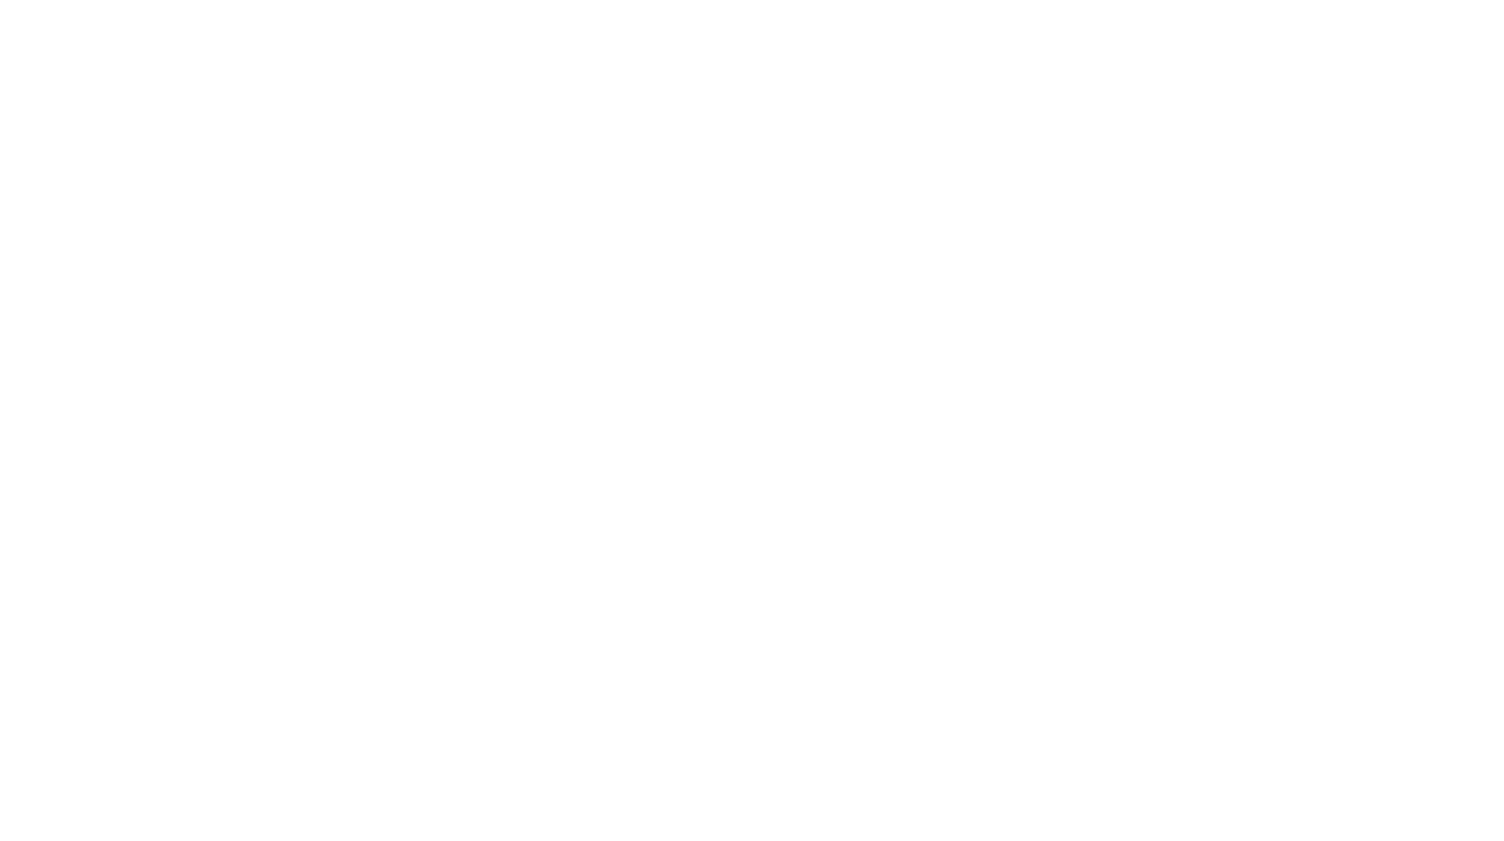 ESAB logo large for dark backgrounds (transparent PNG)